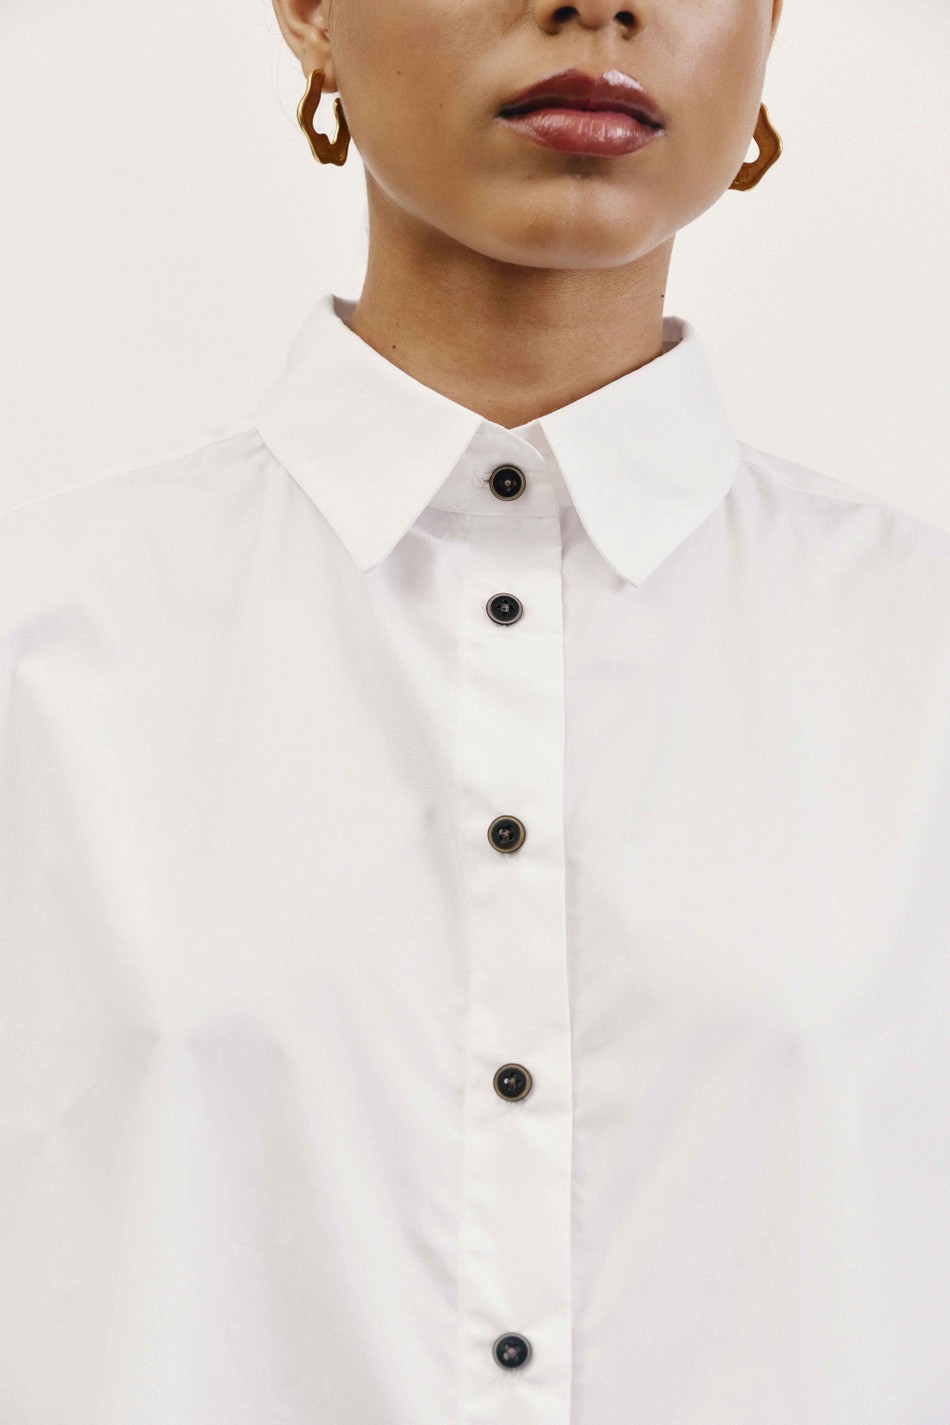 Camisa Cordel - Branca